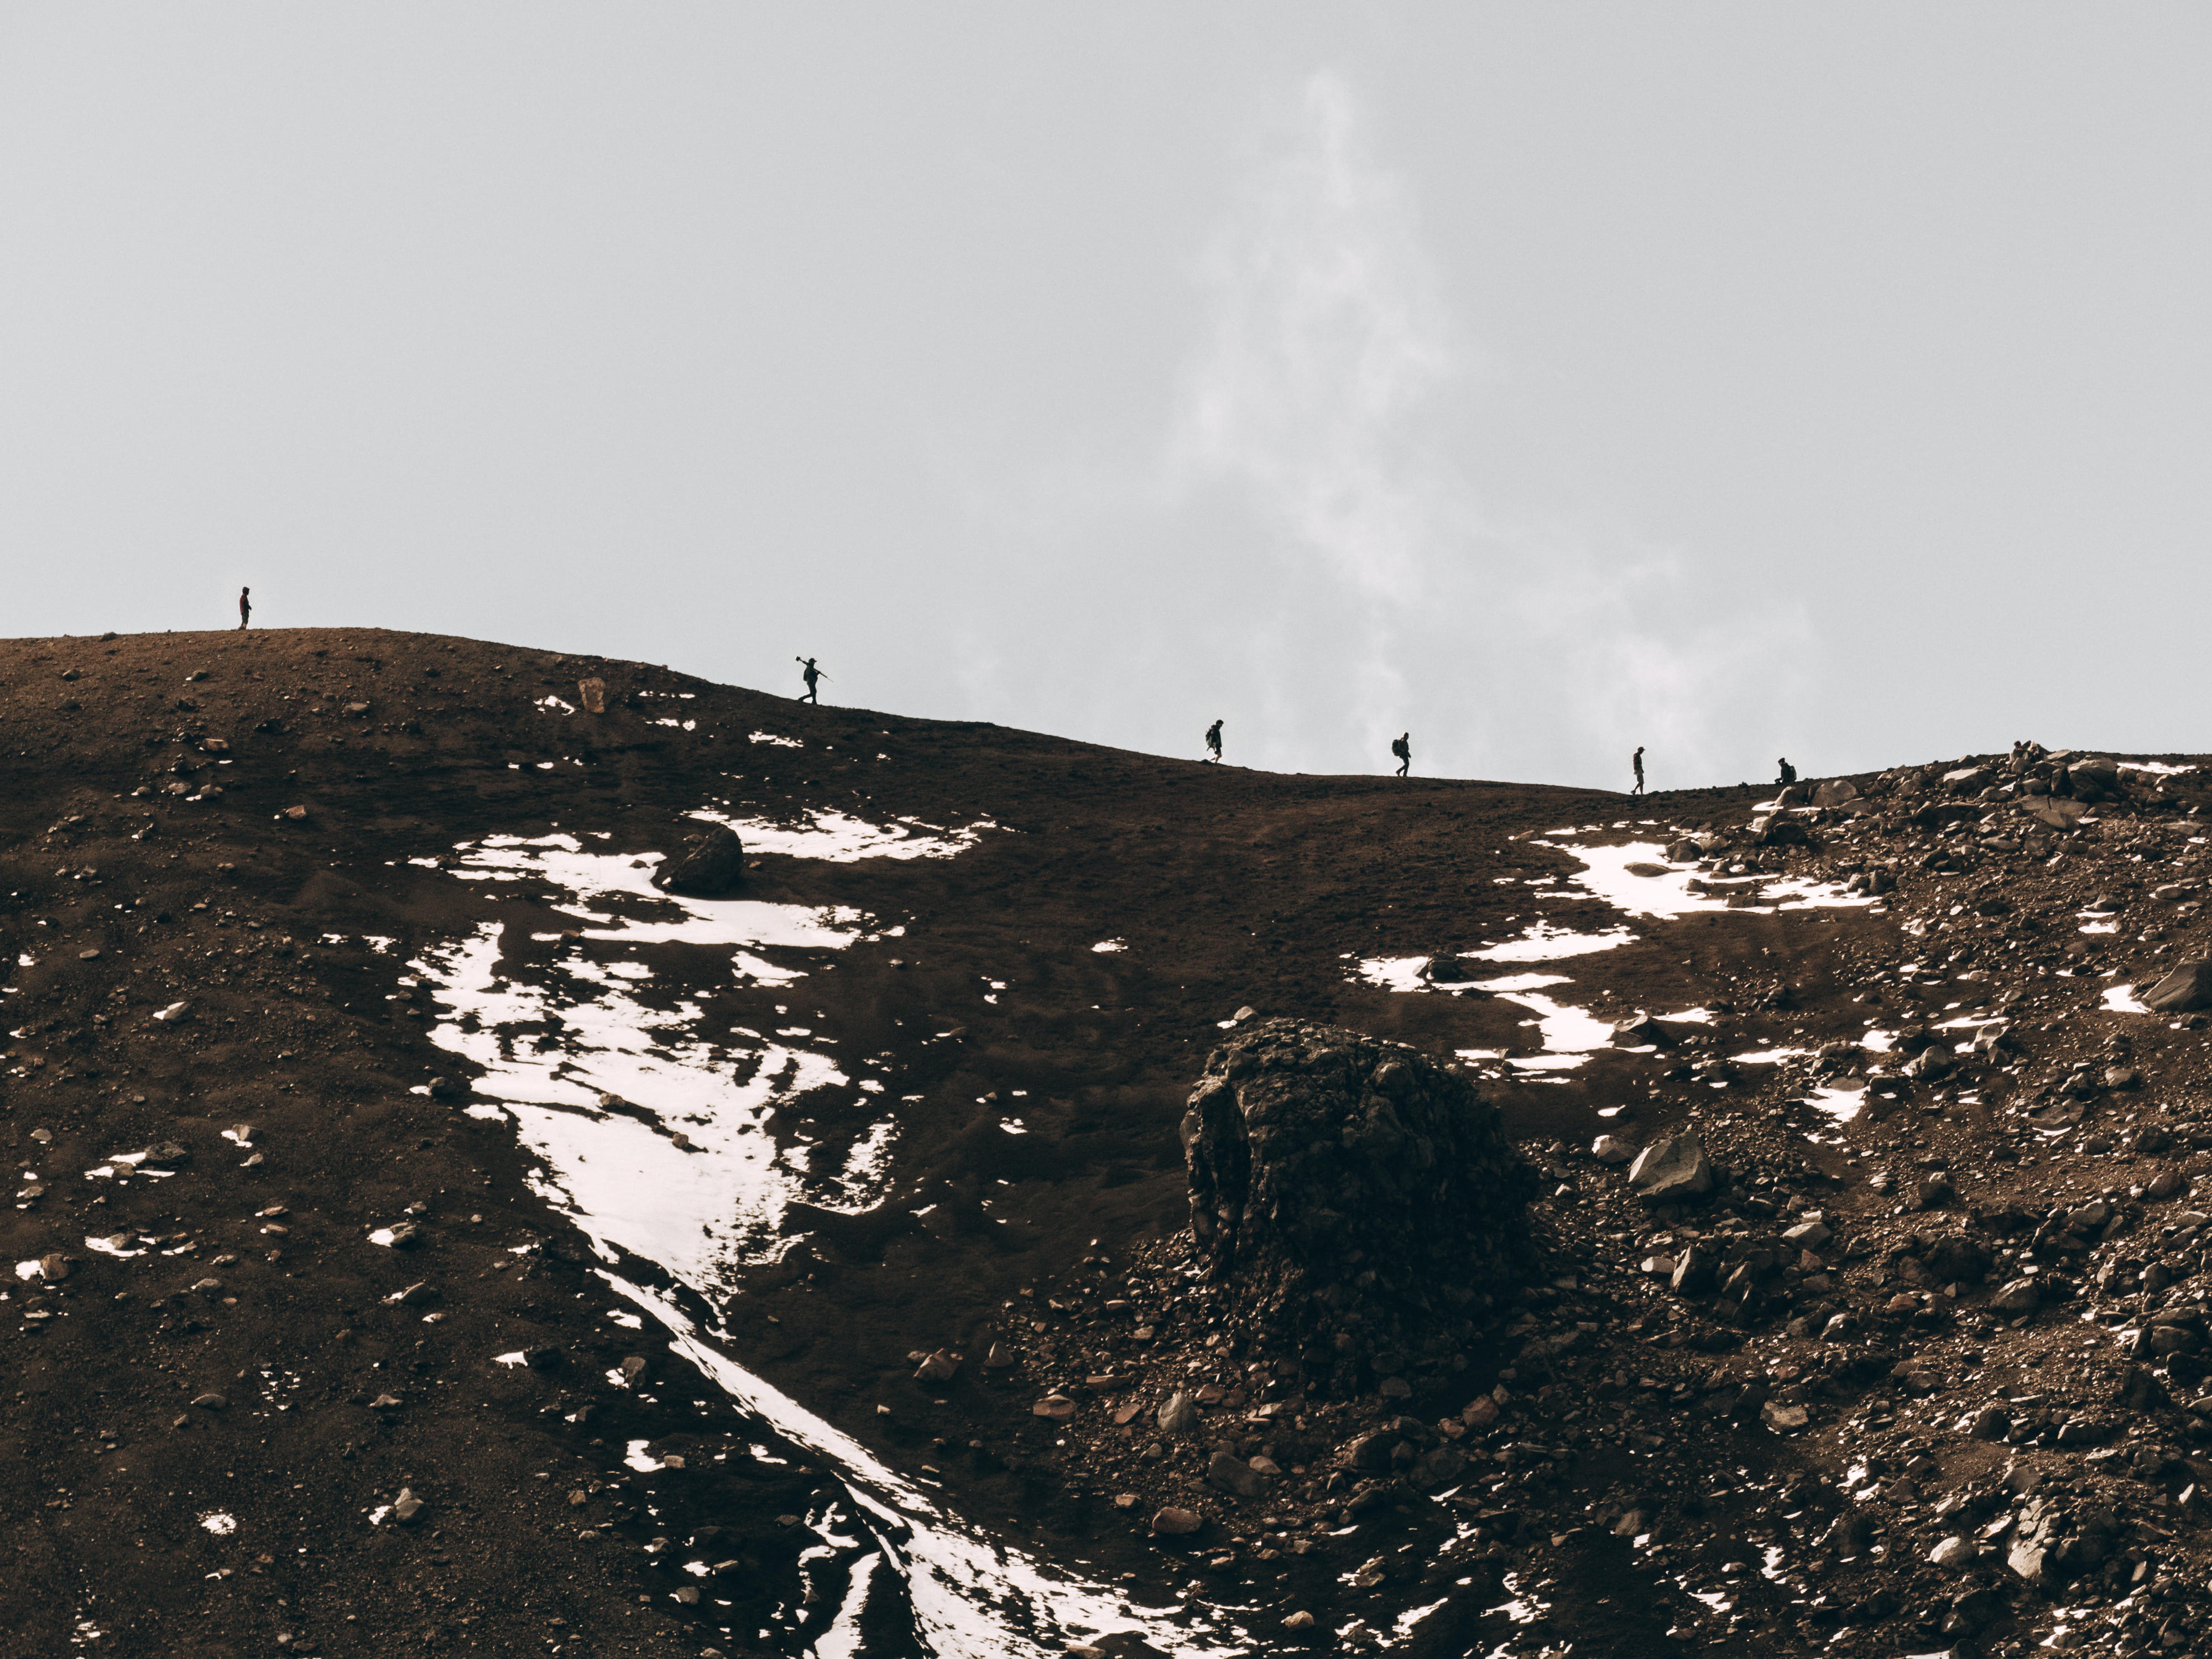 Mount Etna Trekking